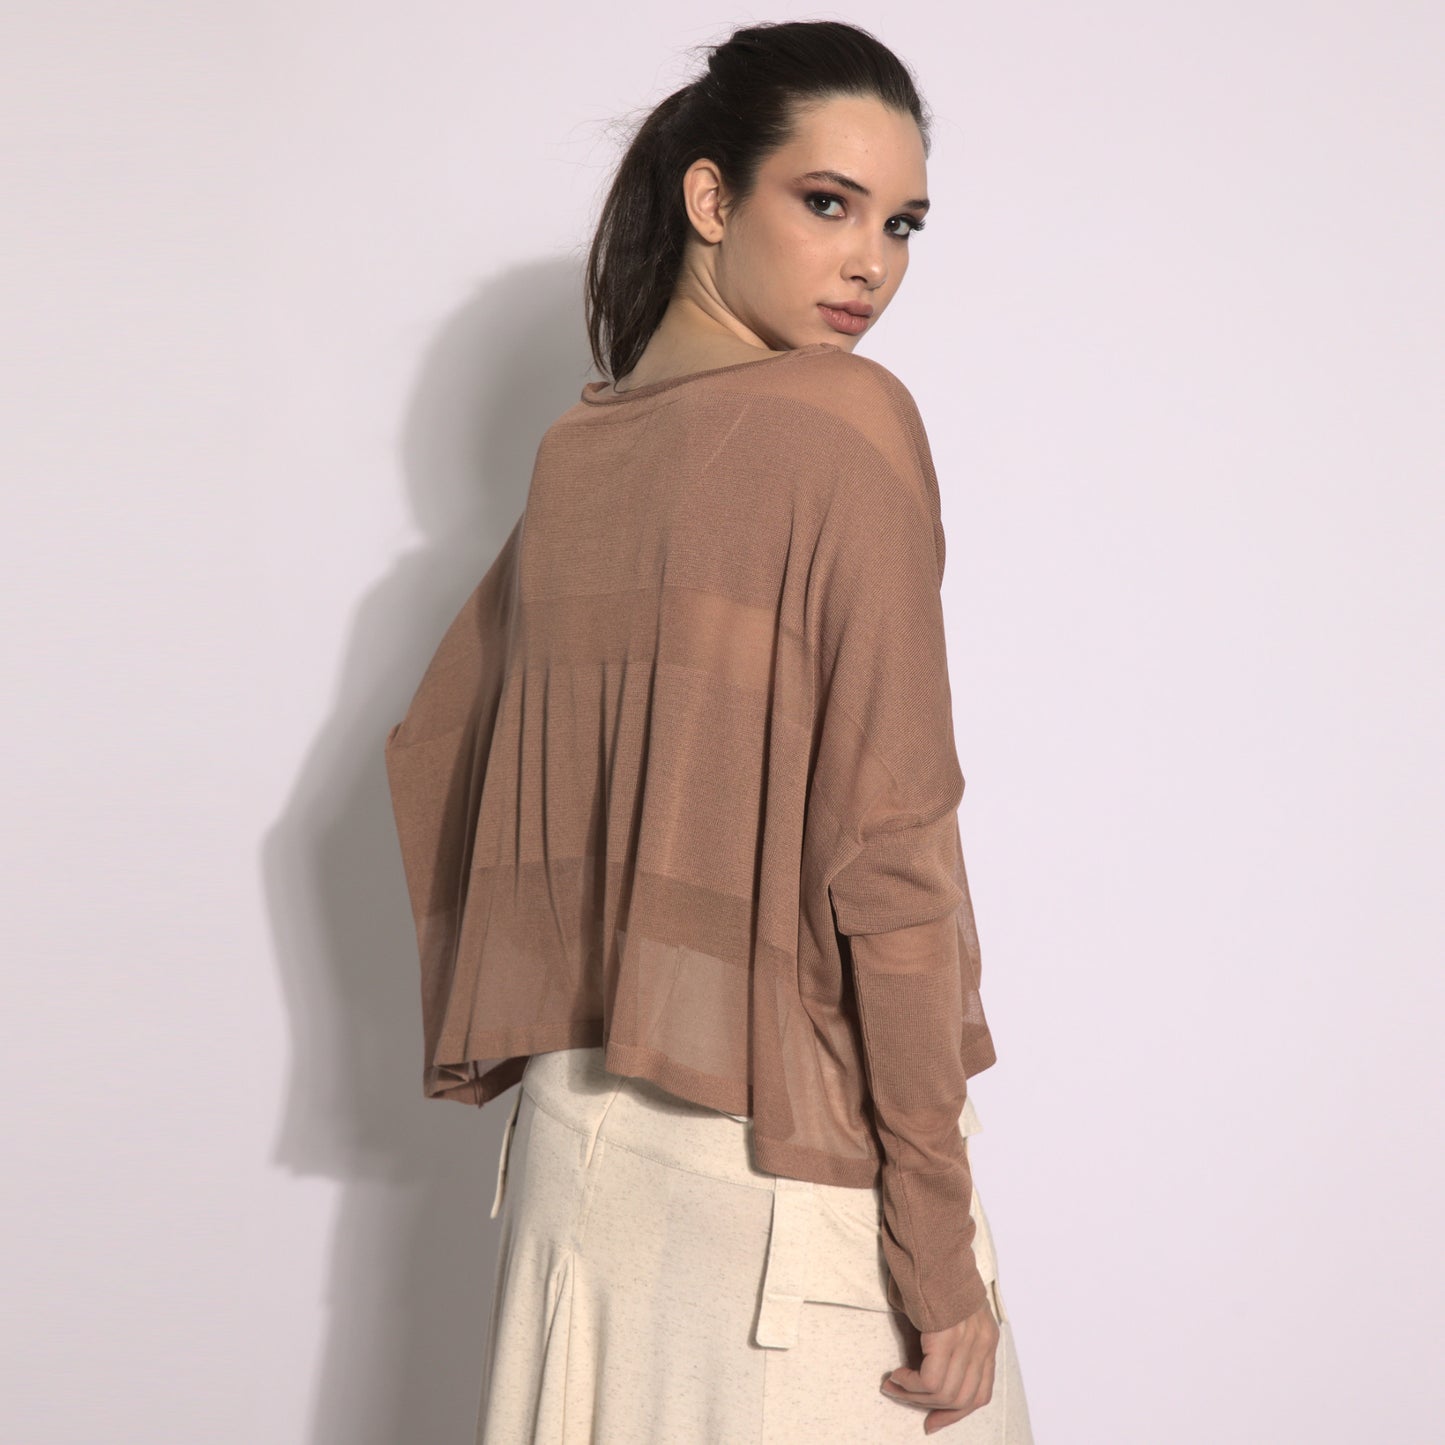 Giselle - Blusa de tricot listrada na cor argila com transparencias